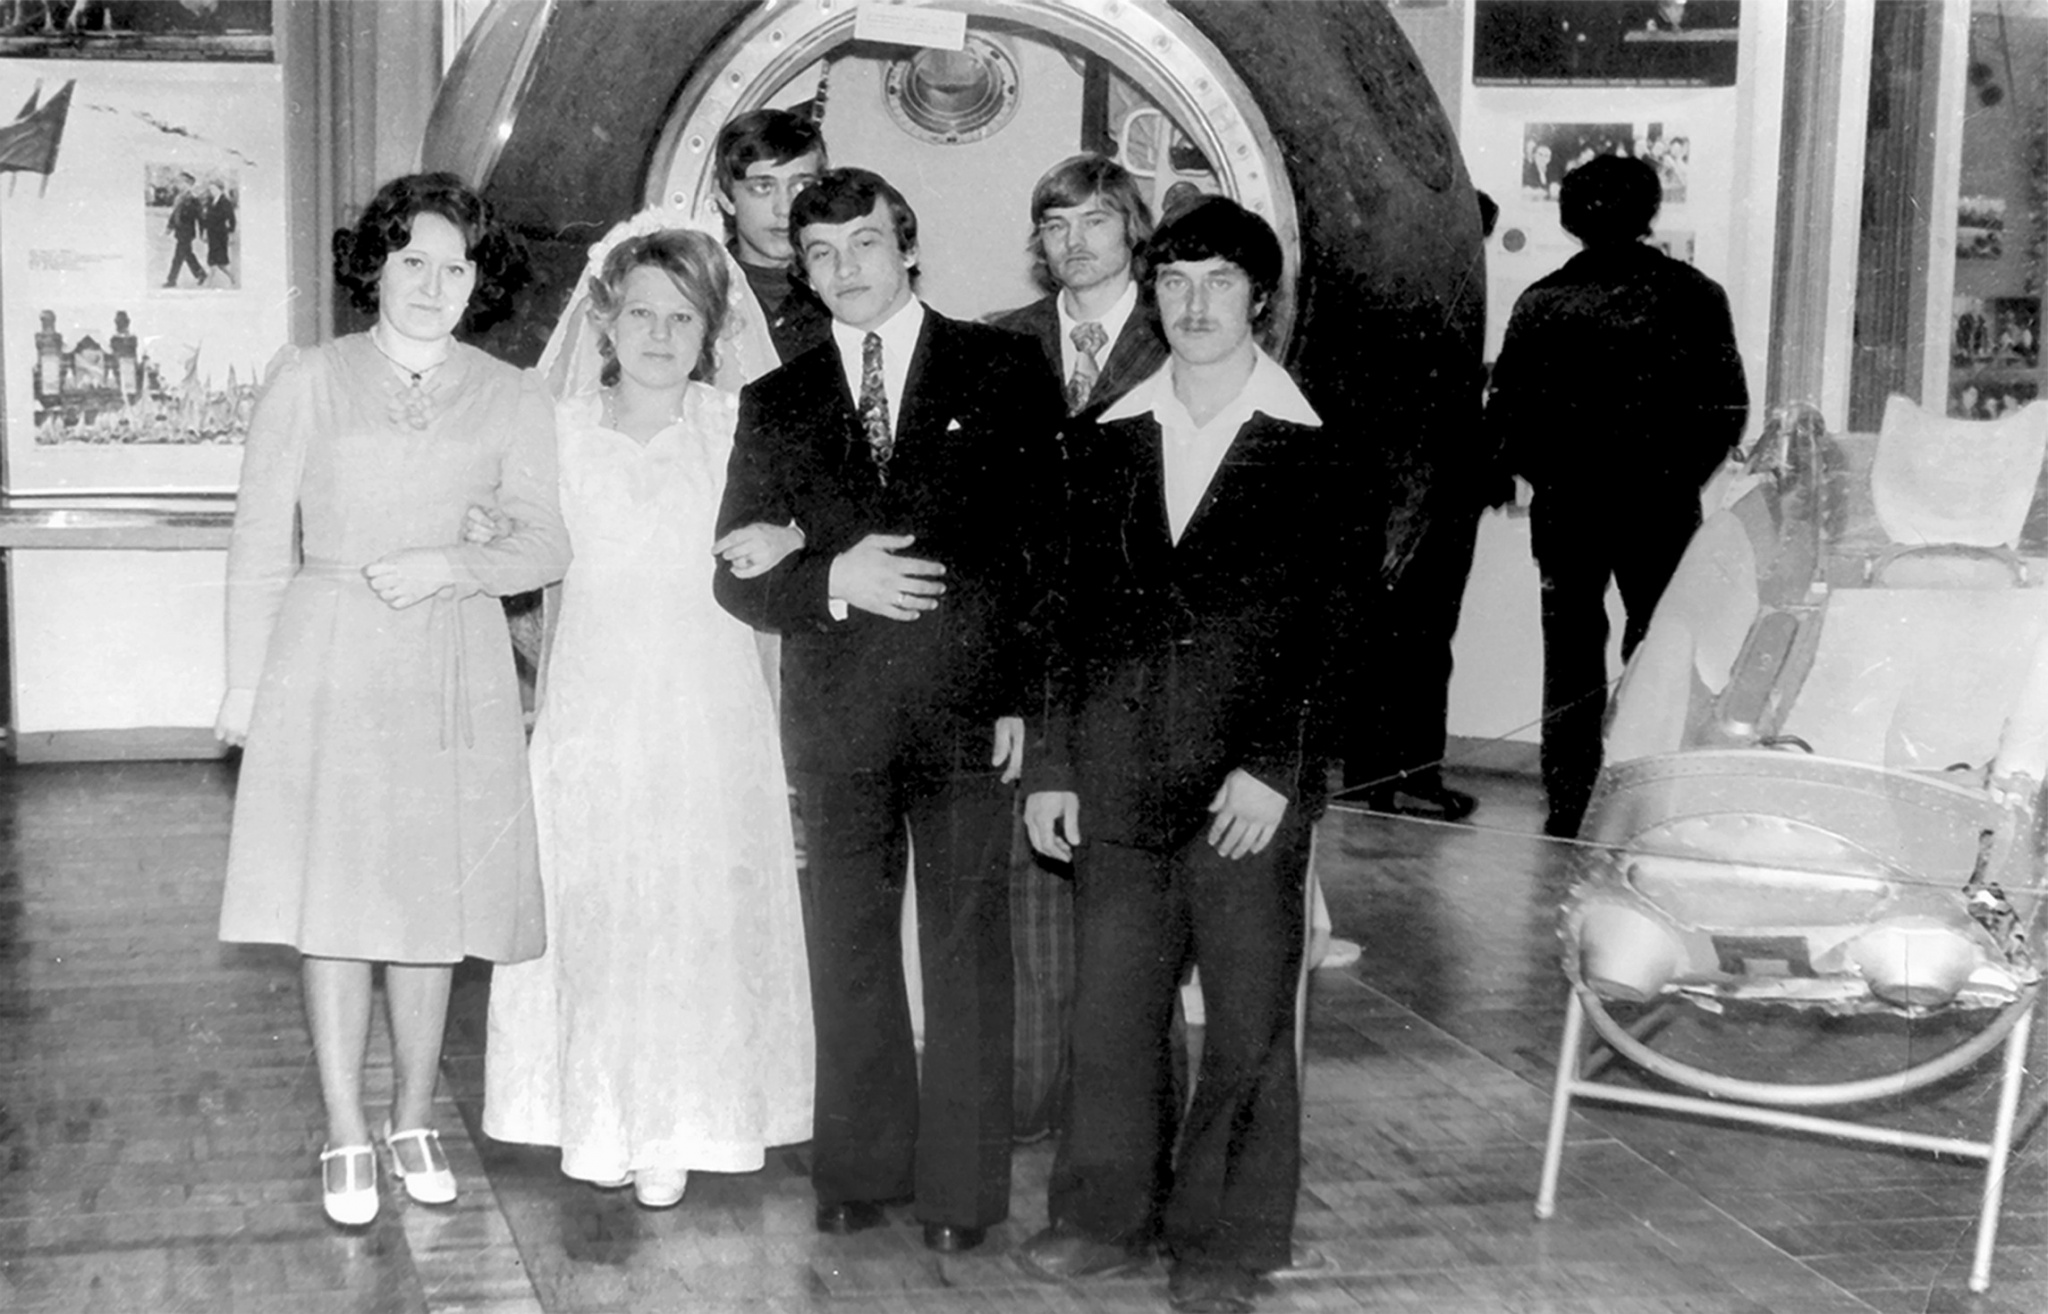 Обязательное посещение музея в день свадьбы. 1970-е годы.